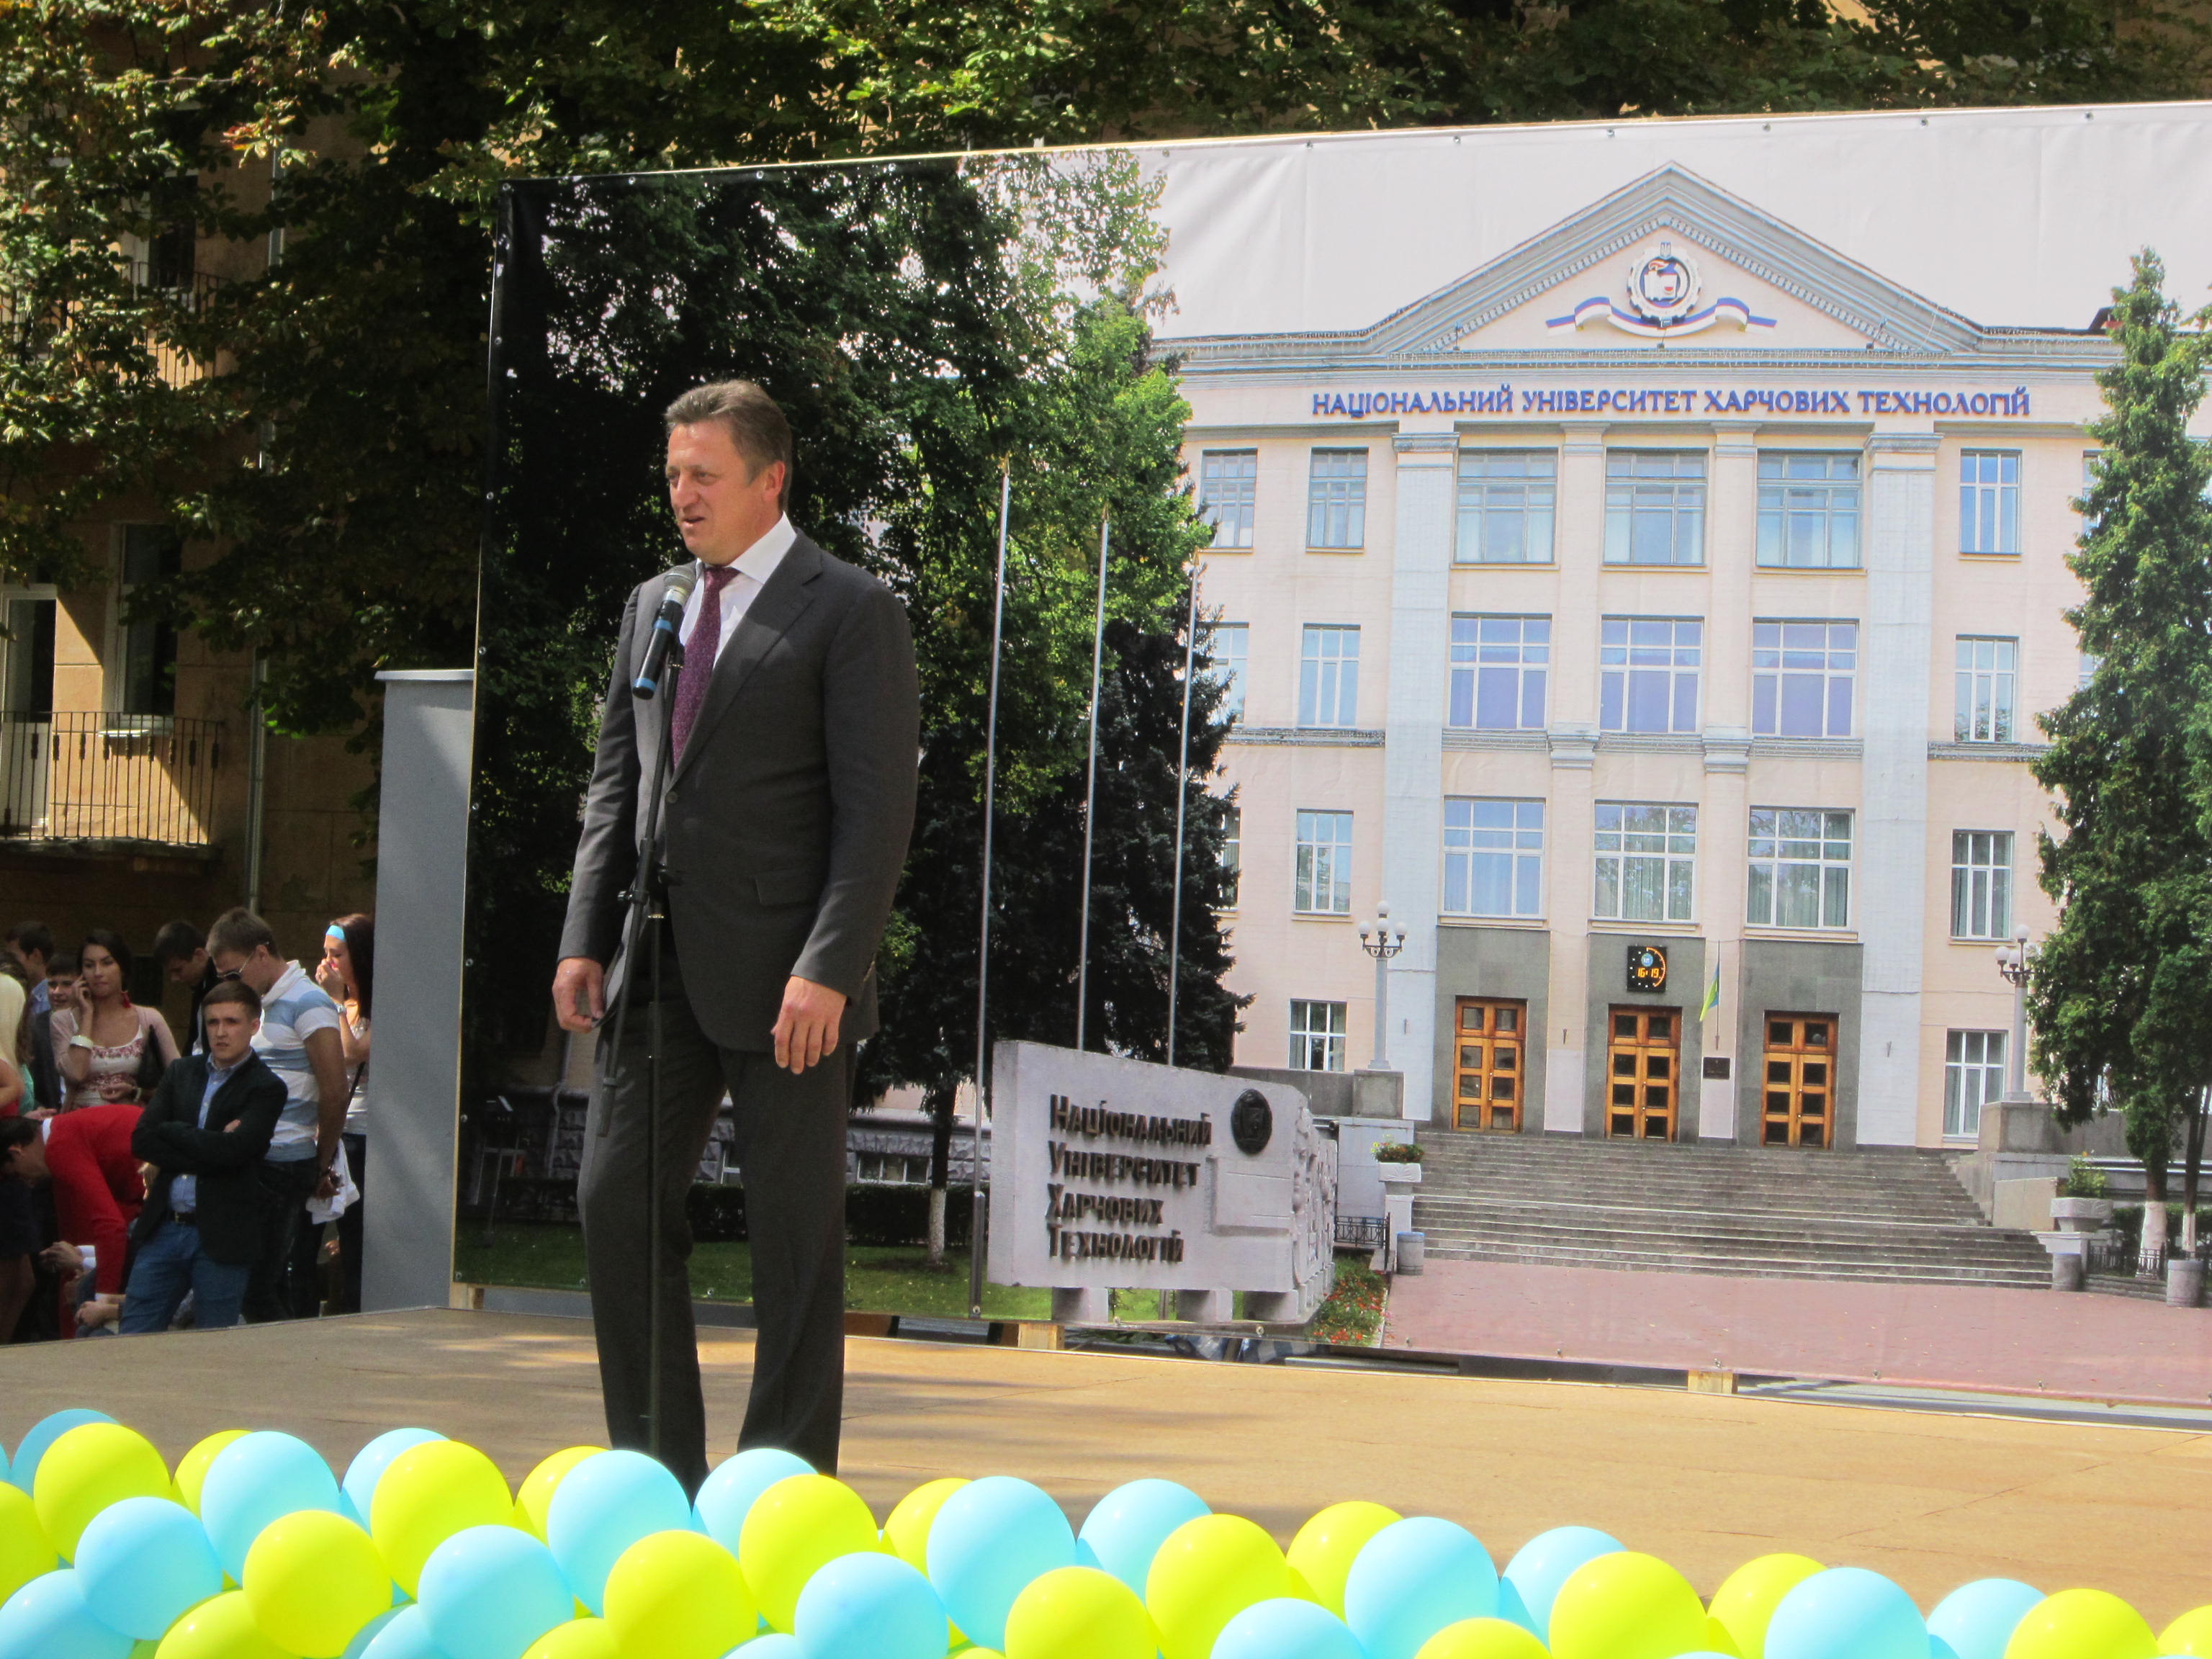 Игорь Лысво поздравил студентов университета. Фото плесс-службы политика